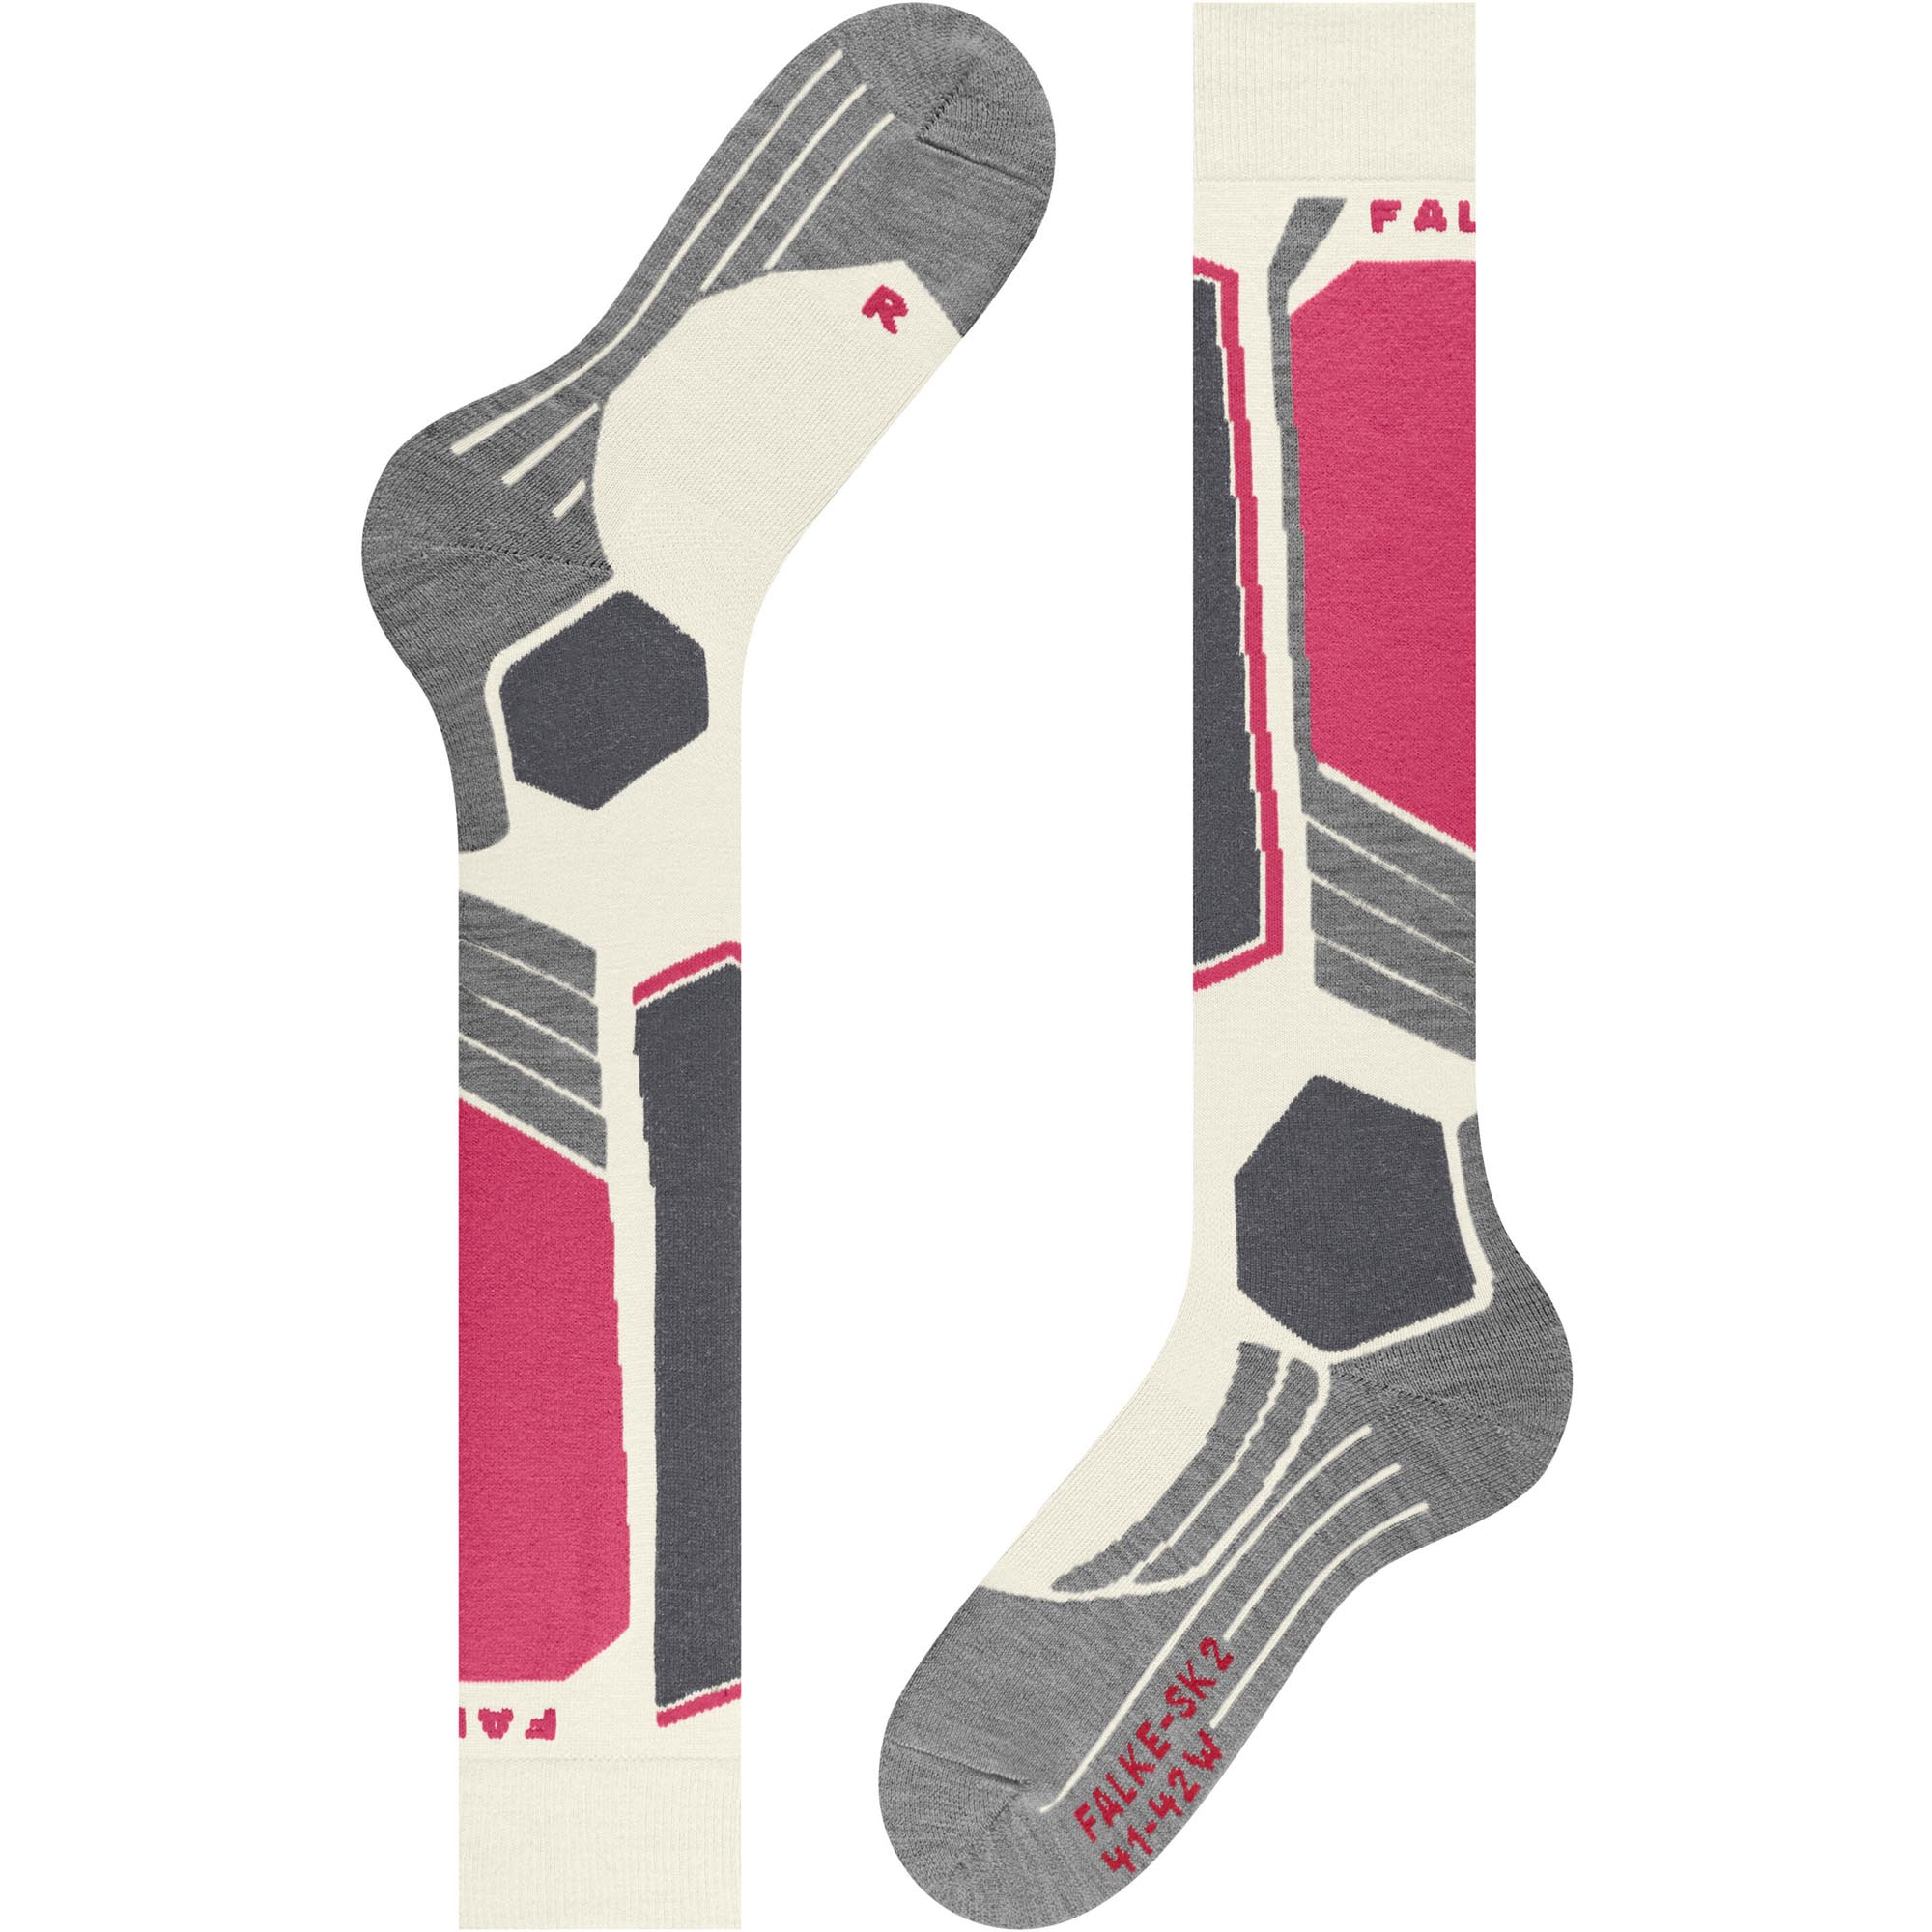 Falke SK2 Intermediate Women's Ski Socks